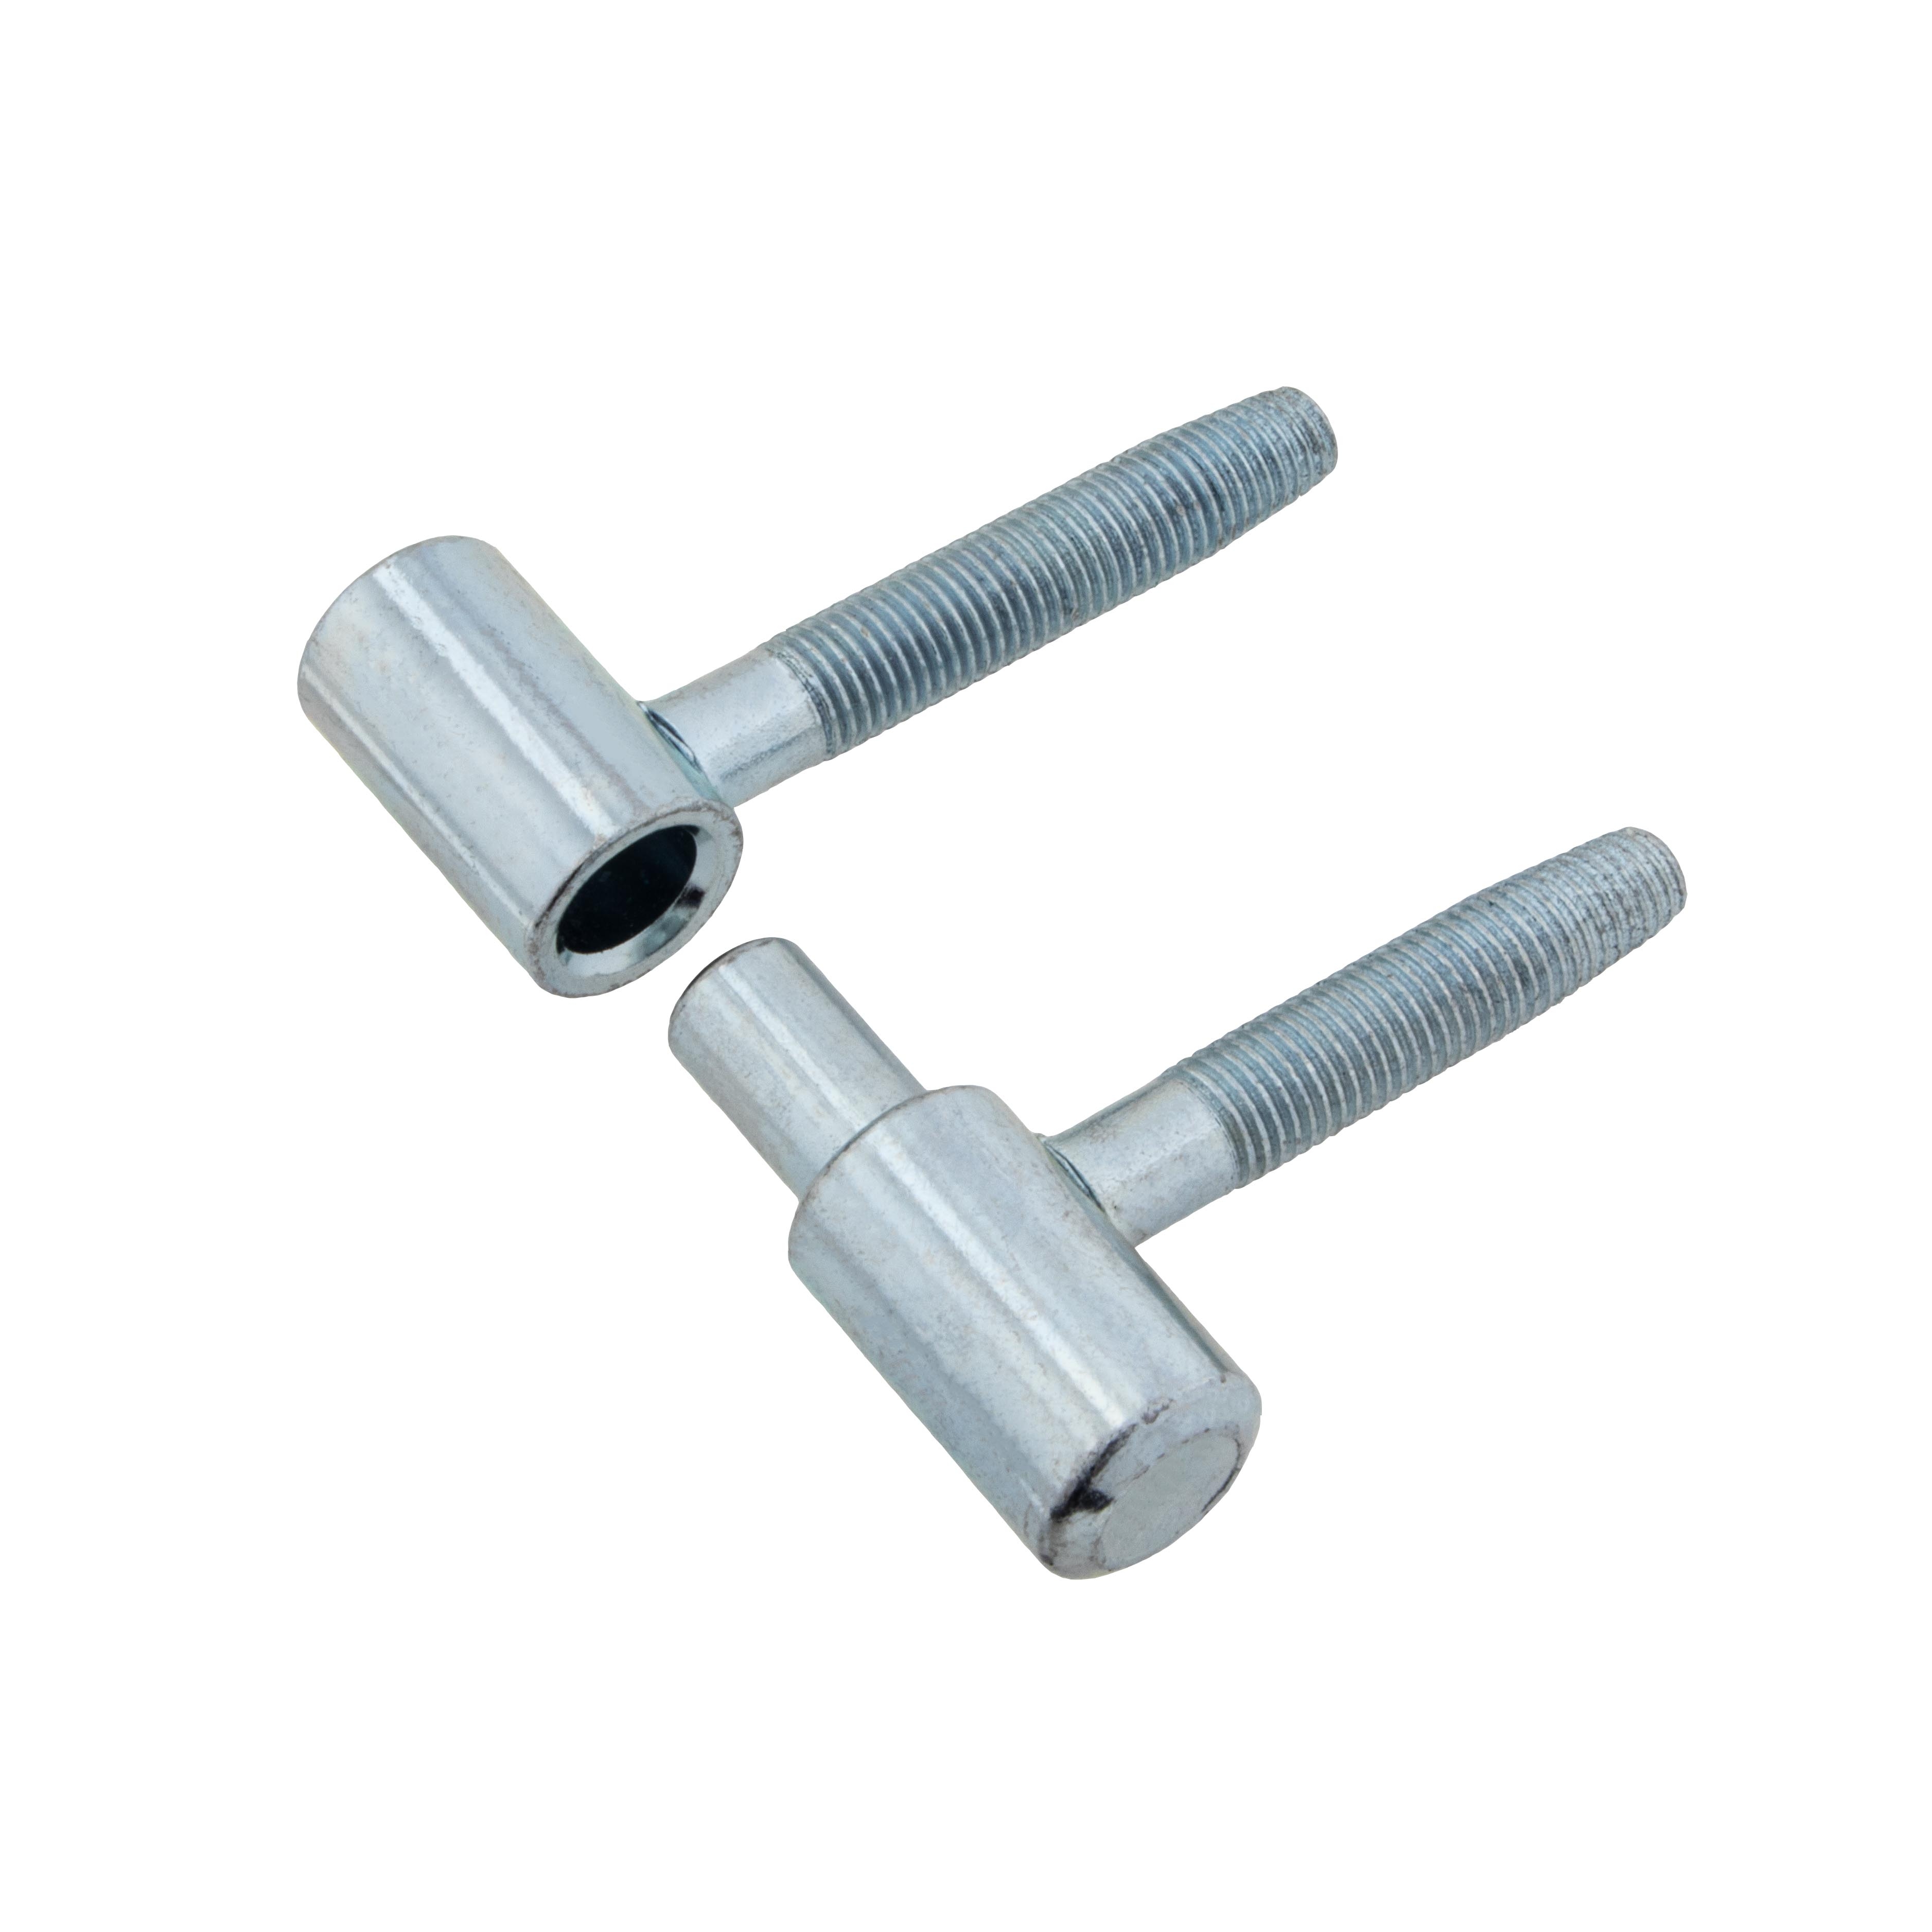 2 St 16 mm M10x22 mm Rahmenteile für Zimmertüren Einbohrbänder Innentürbänder 